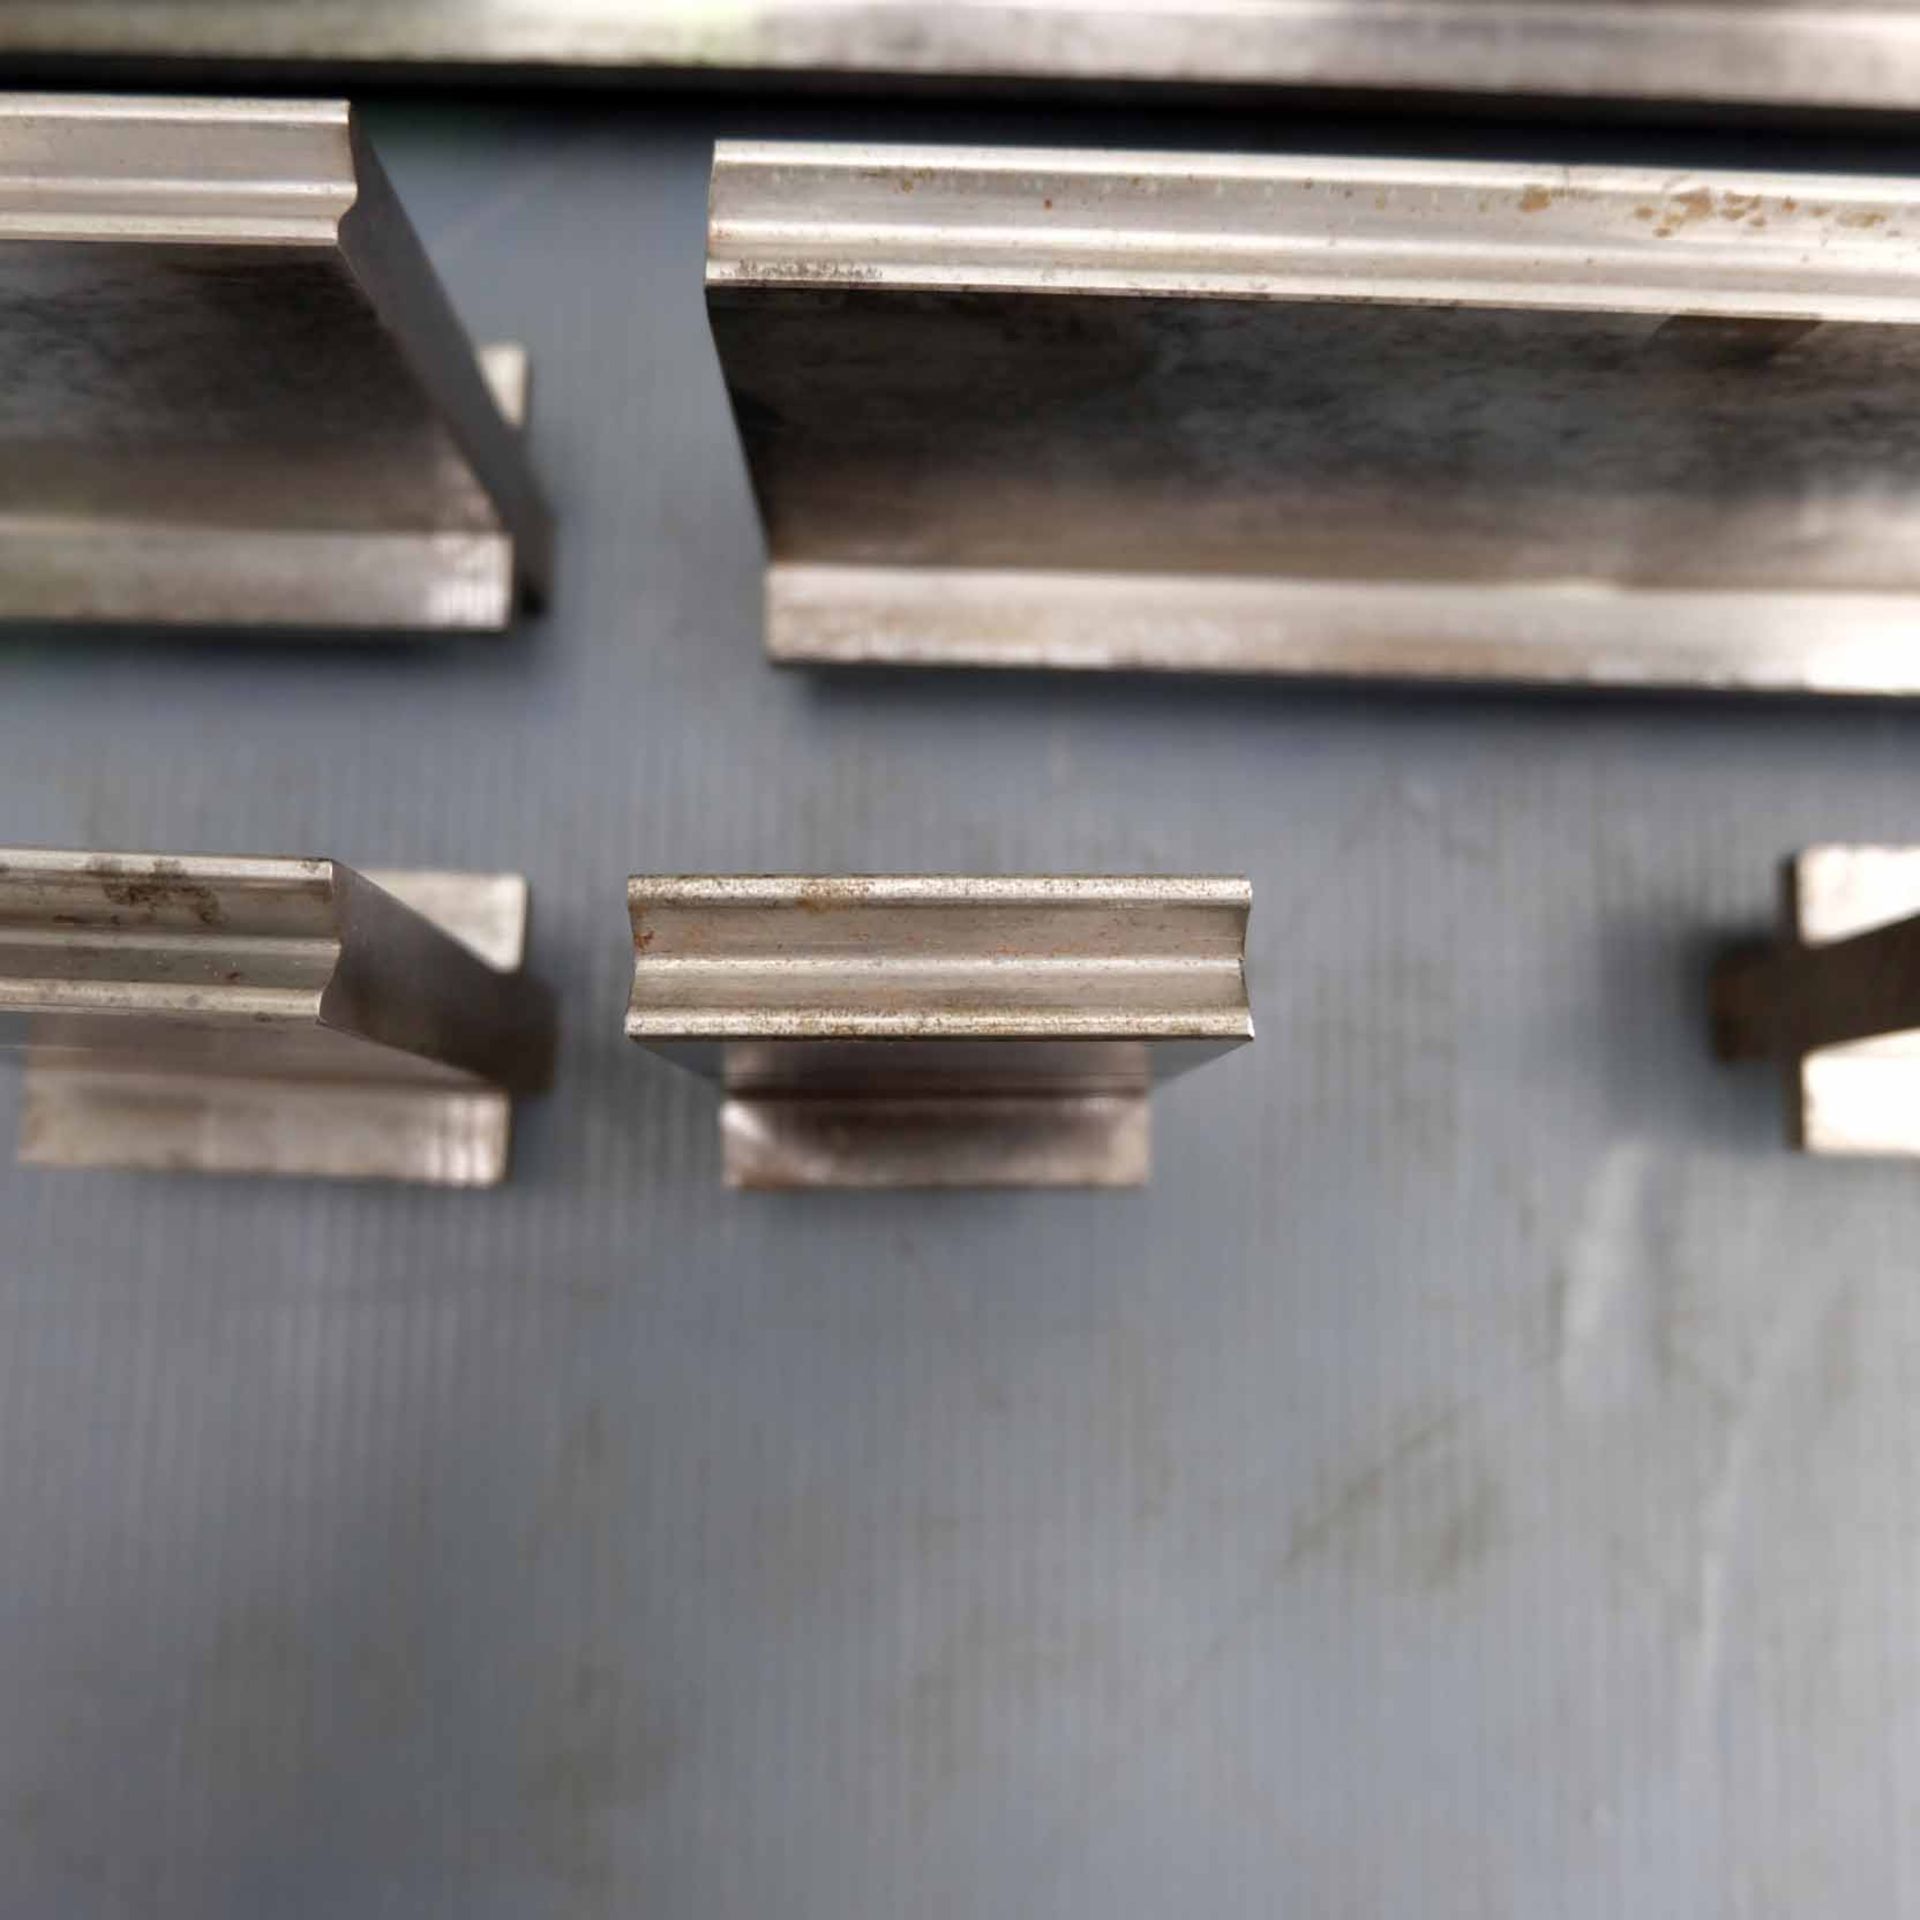 LVD Bottom Press Brake Tooling. Various Lengths. 680mm, 505mm, 398mm, 260mm, 170mm, 88mm, 50mm, 45mm - Image 3 of 5